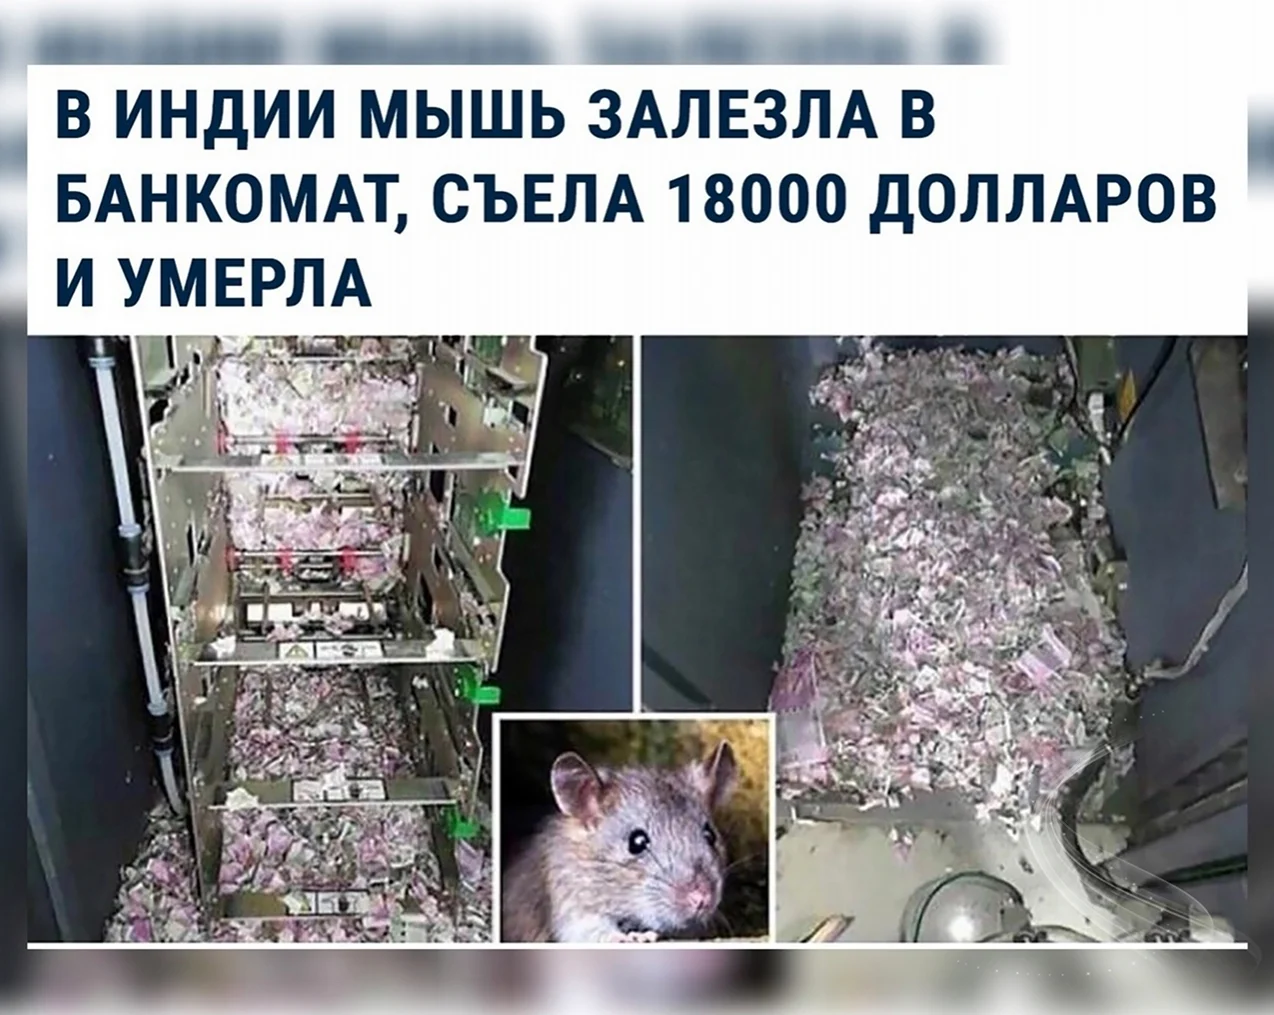 Мышь съела деньги в банкомате. Прикольная картинка